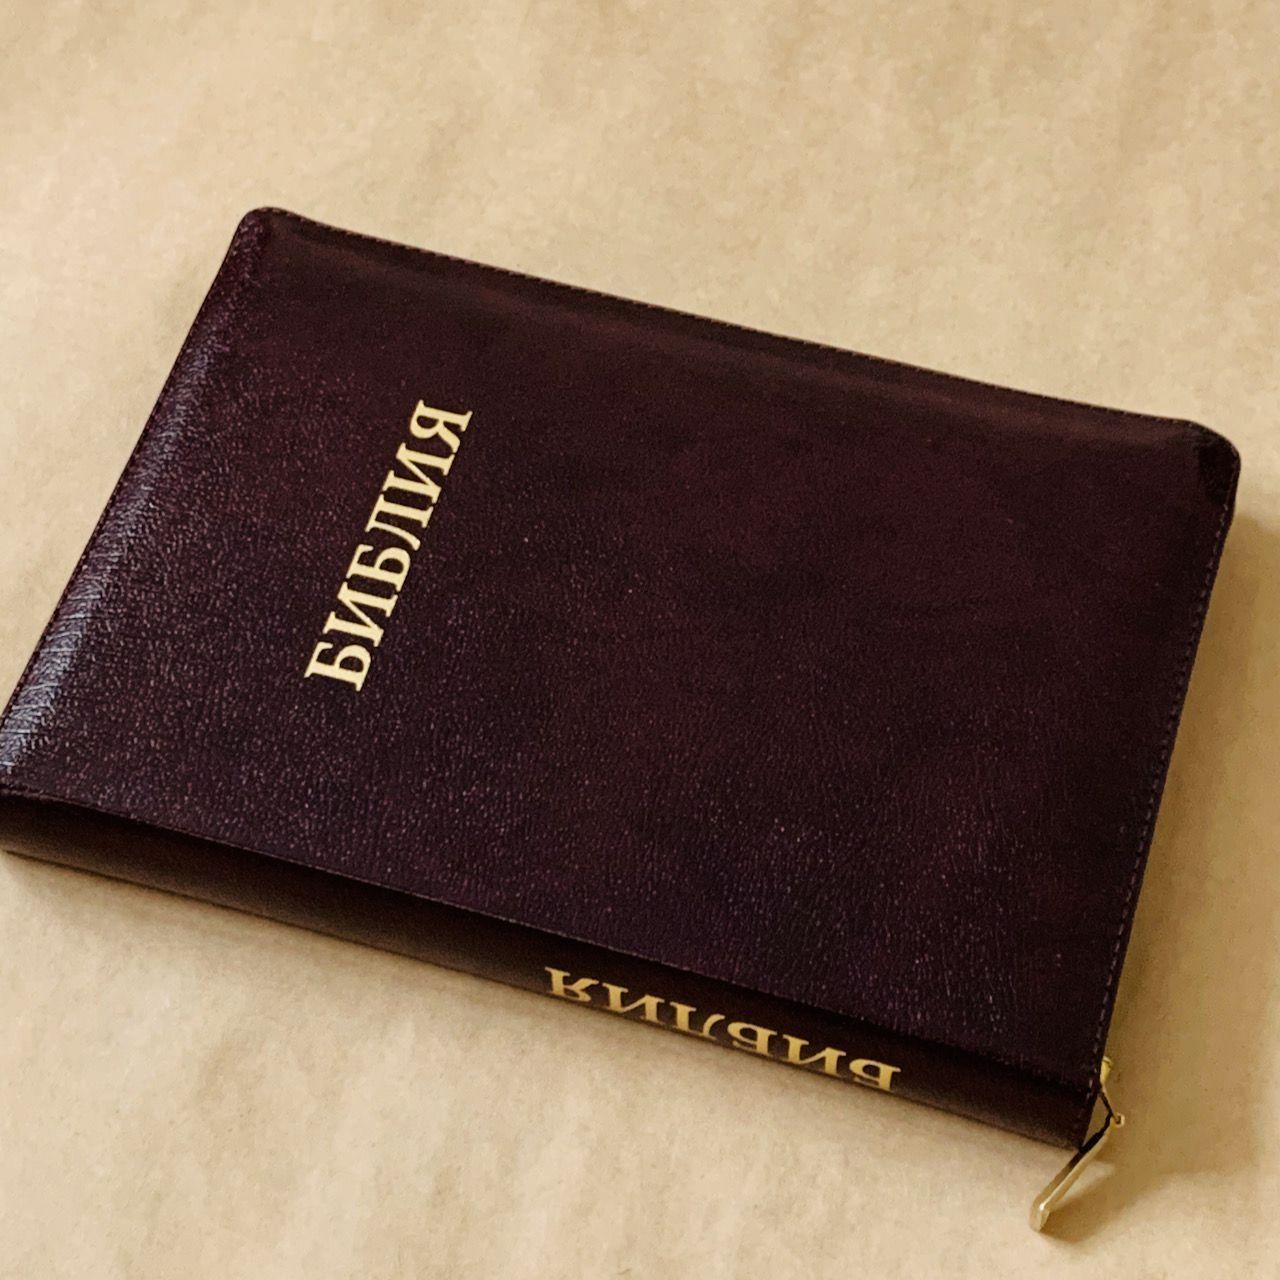 Библия 077zti формат, переплет из натуральной кожи на молнии с индексами, надпись золотом "Библия", цвет темно-коричневый металлик, золотой срез, большой формат, 180*260 мм, цветные карты, крупный шрифт